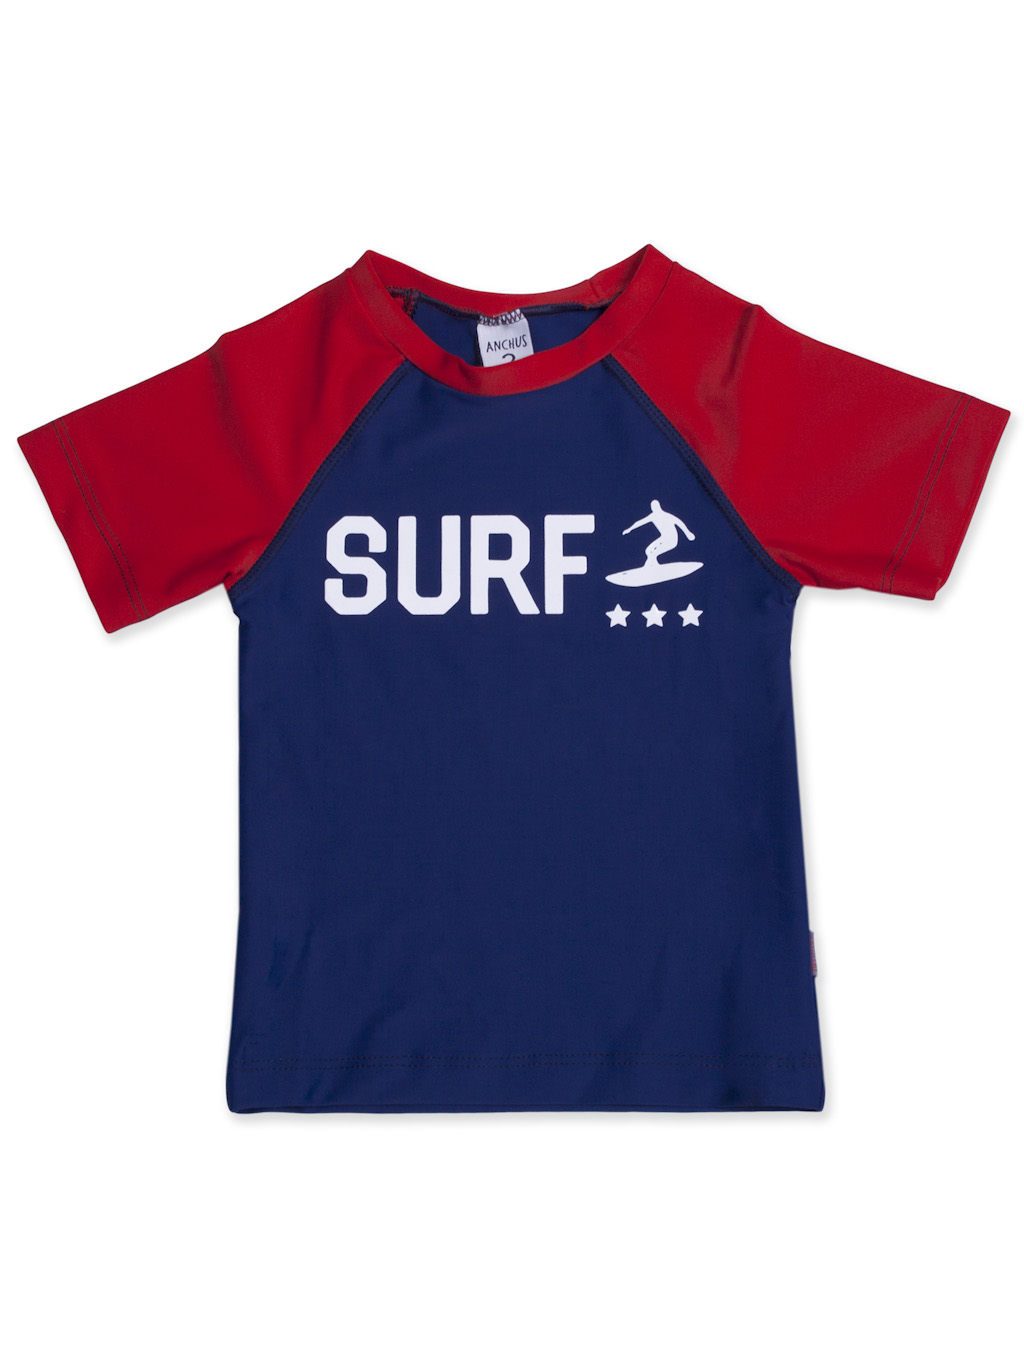 Remera UV mc surfer marino rojo